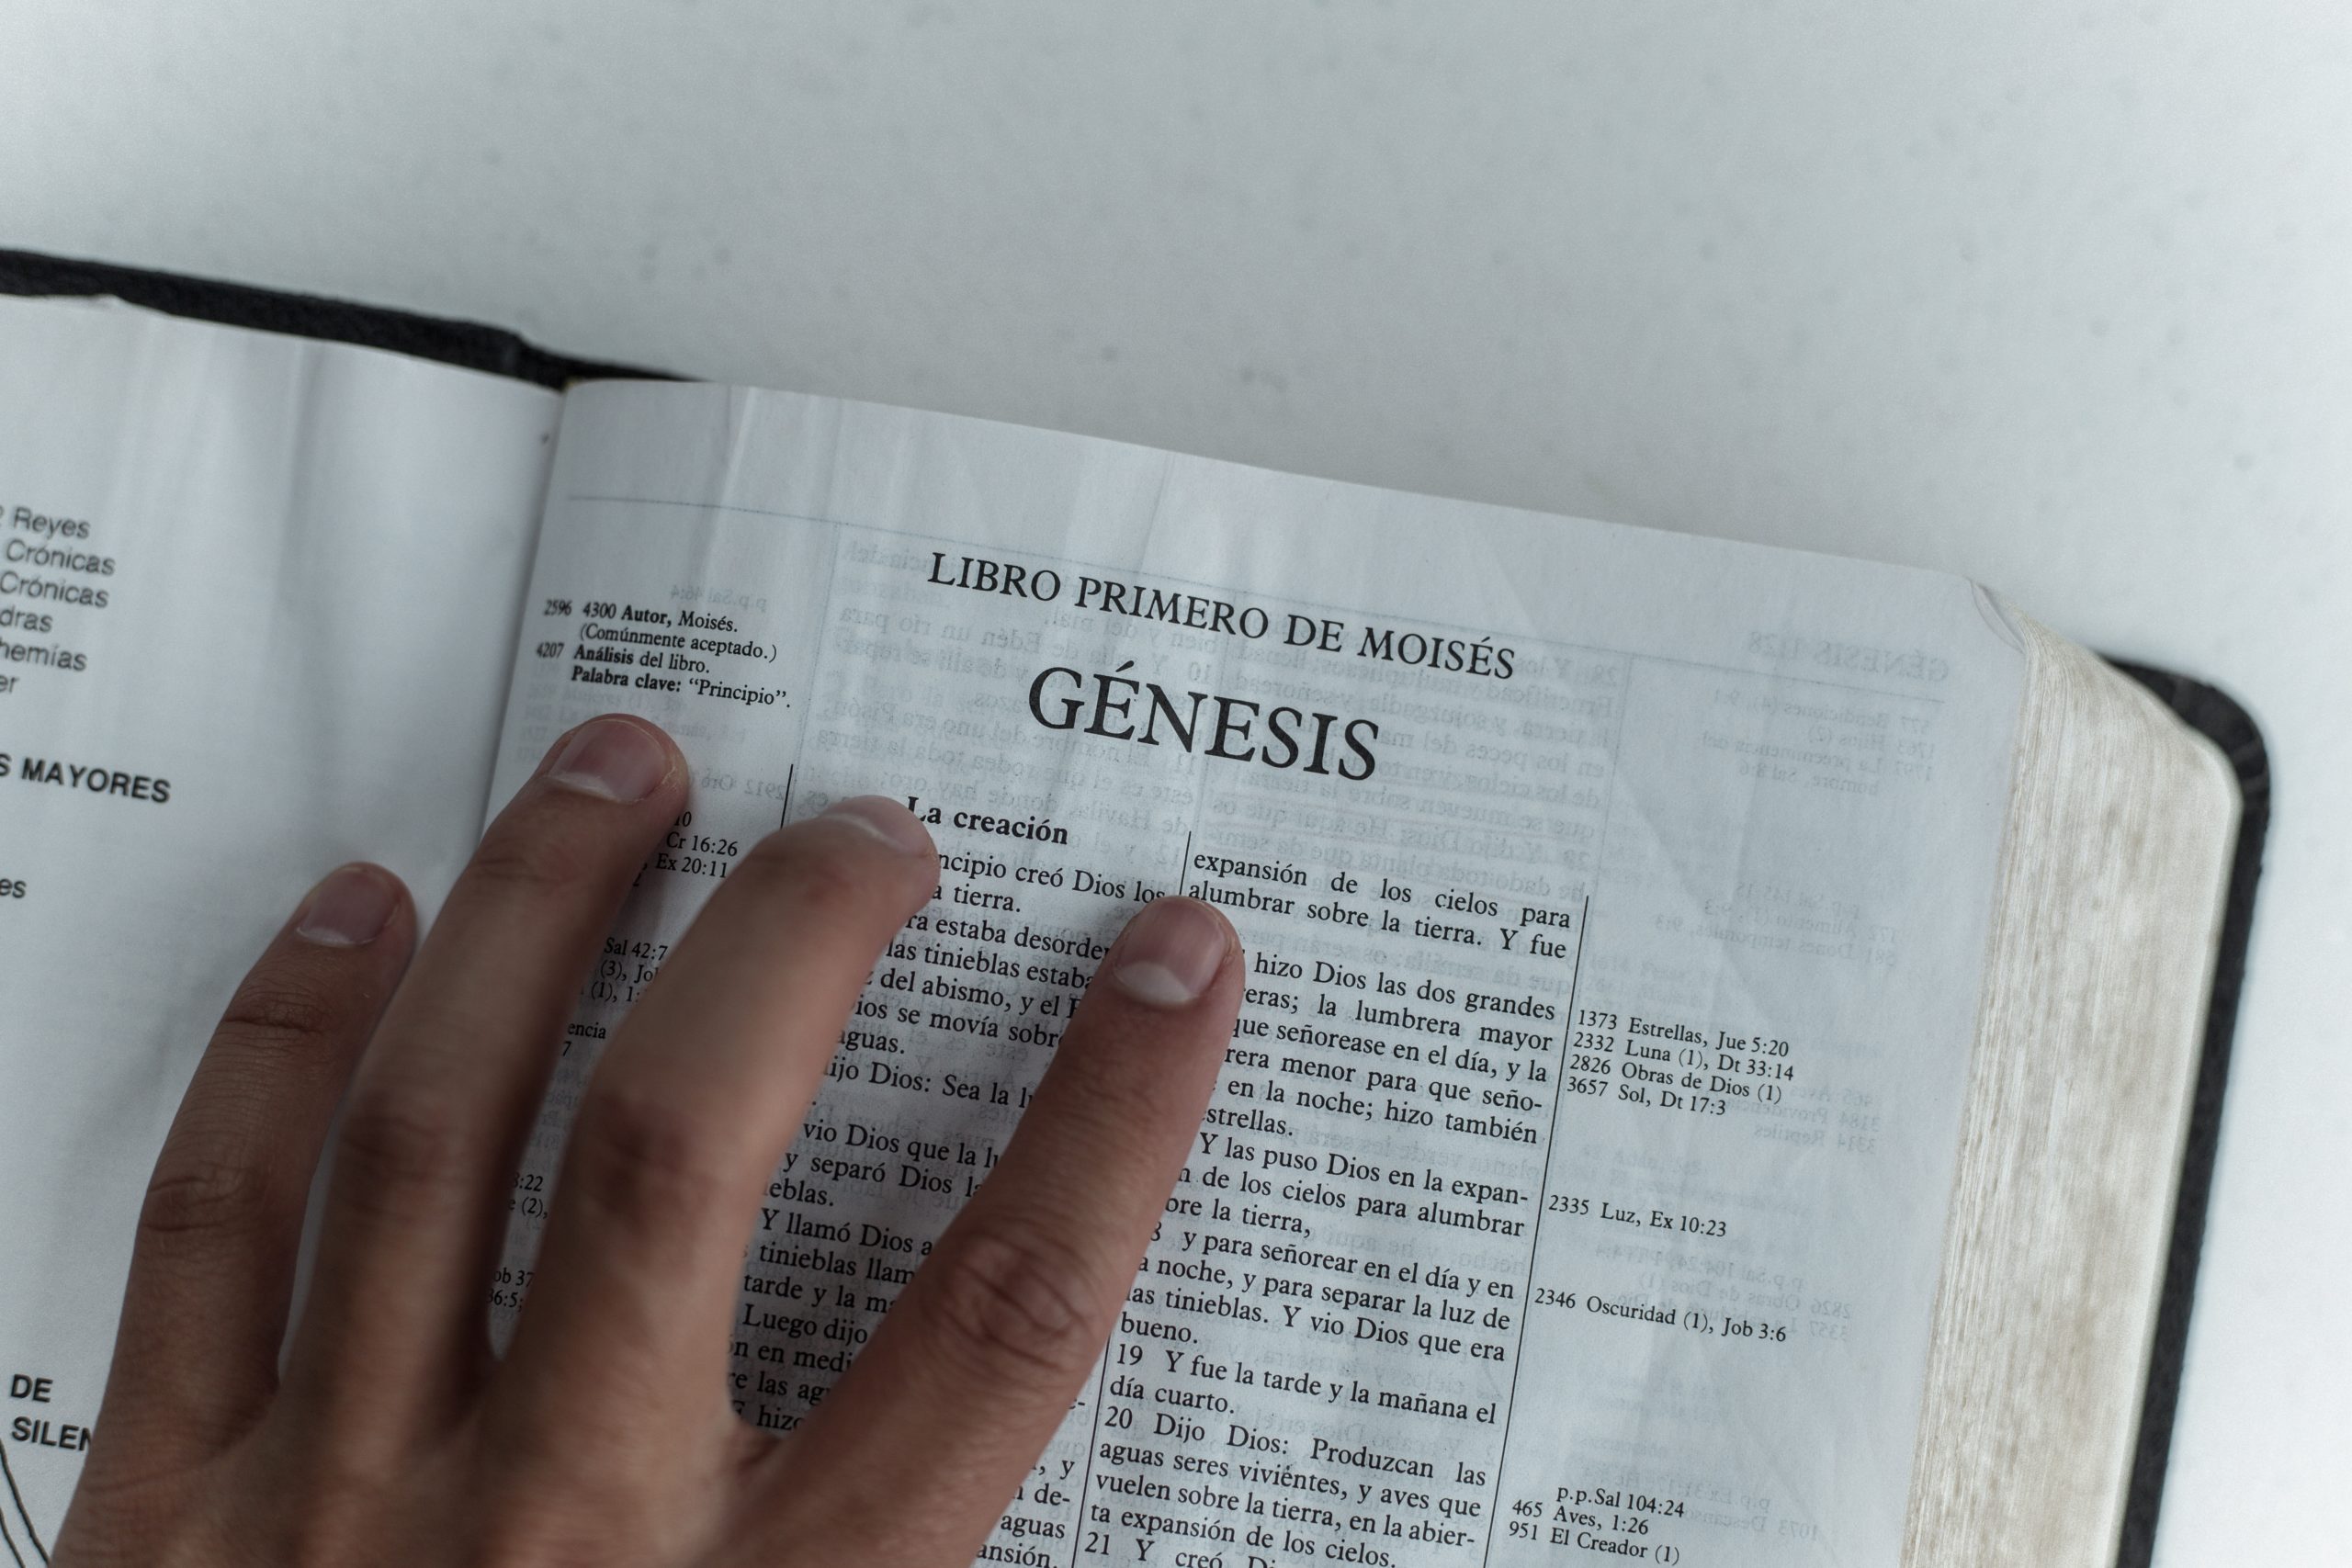 imagem ilustrativa - bíblia aberta no livro de Gênesis